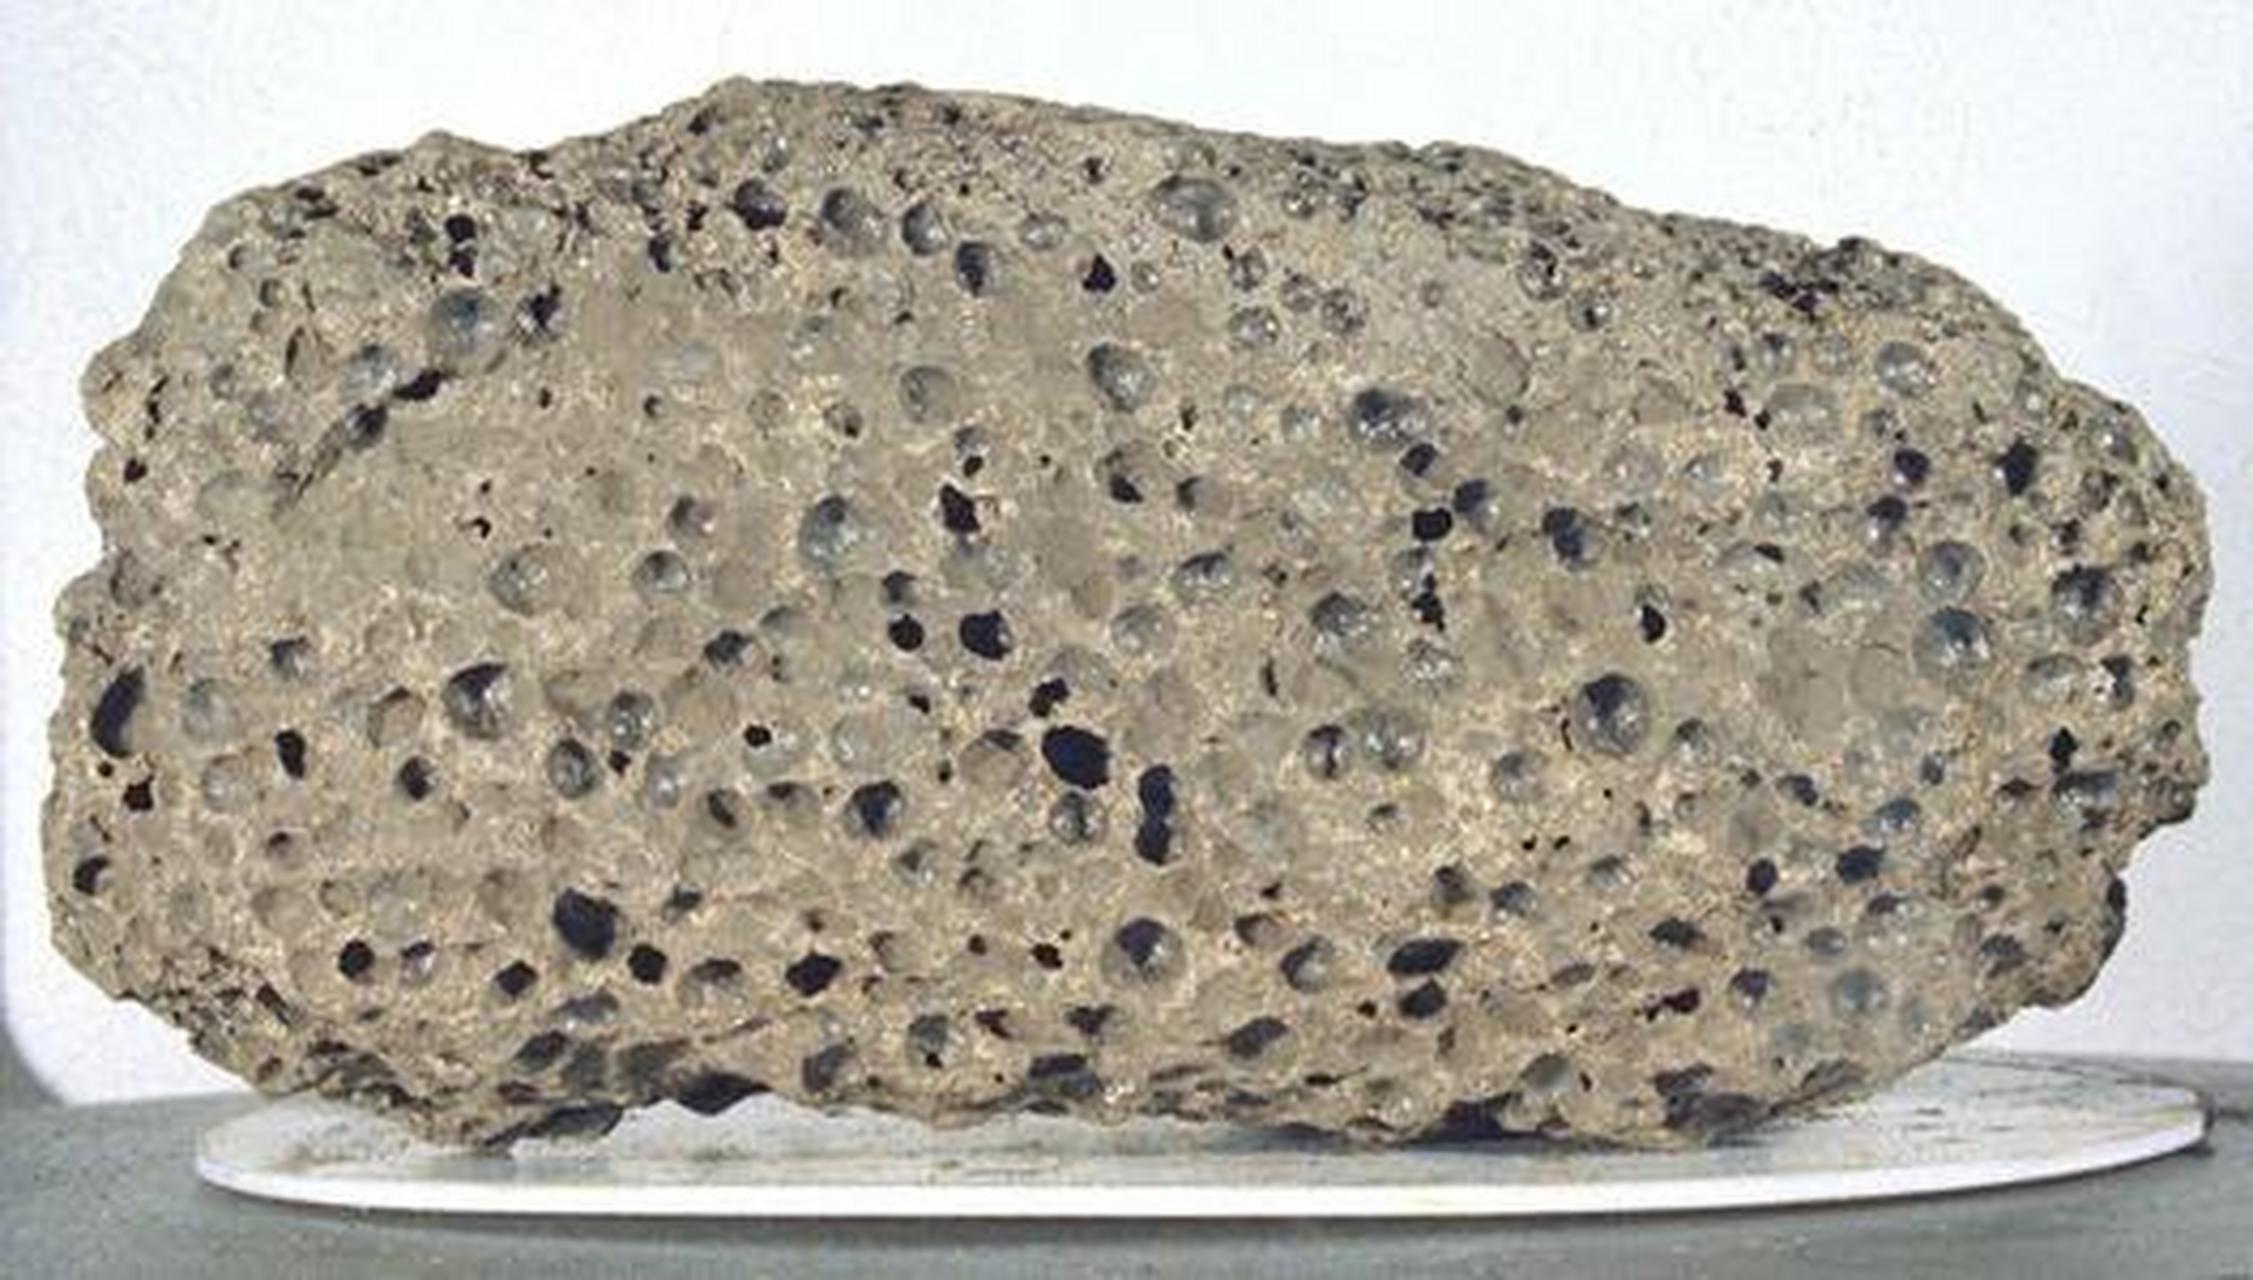 多孔月球斜长岩陨石 图1为月岩样品来自网络,其它图为发现一块斜长石